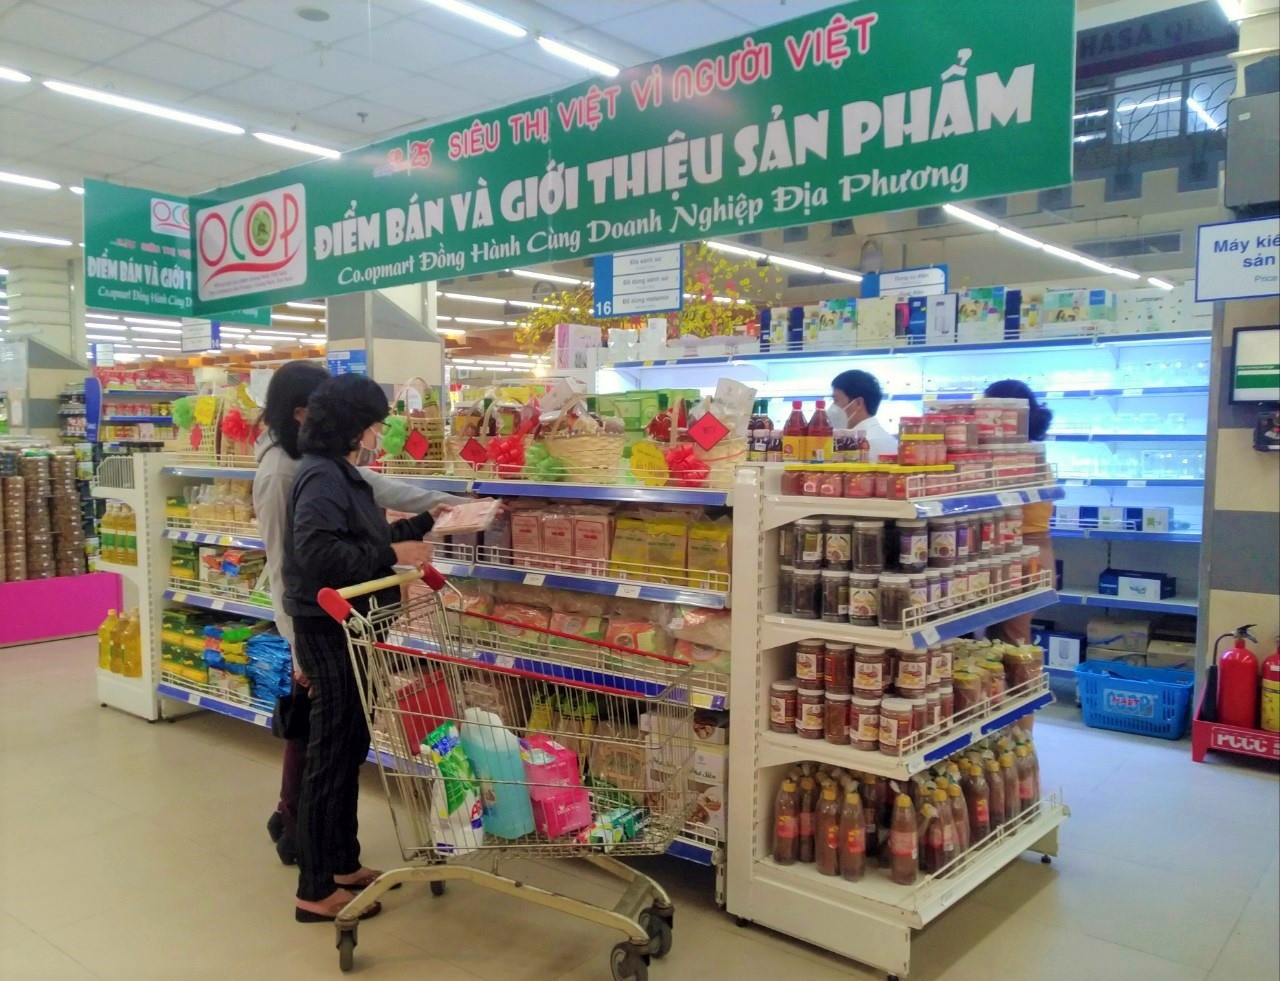 Siêu thị Co.opMart Tam Kỳ bố trí riêng gian hàng Việt và gian hàng OCOP Quảng Nam. Ảnh: T.S